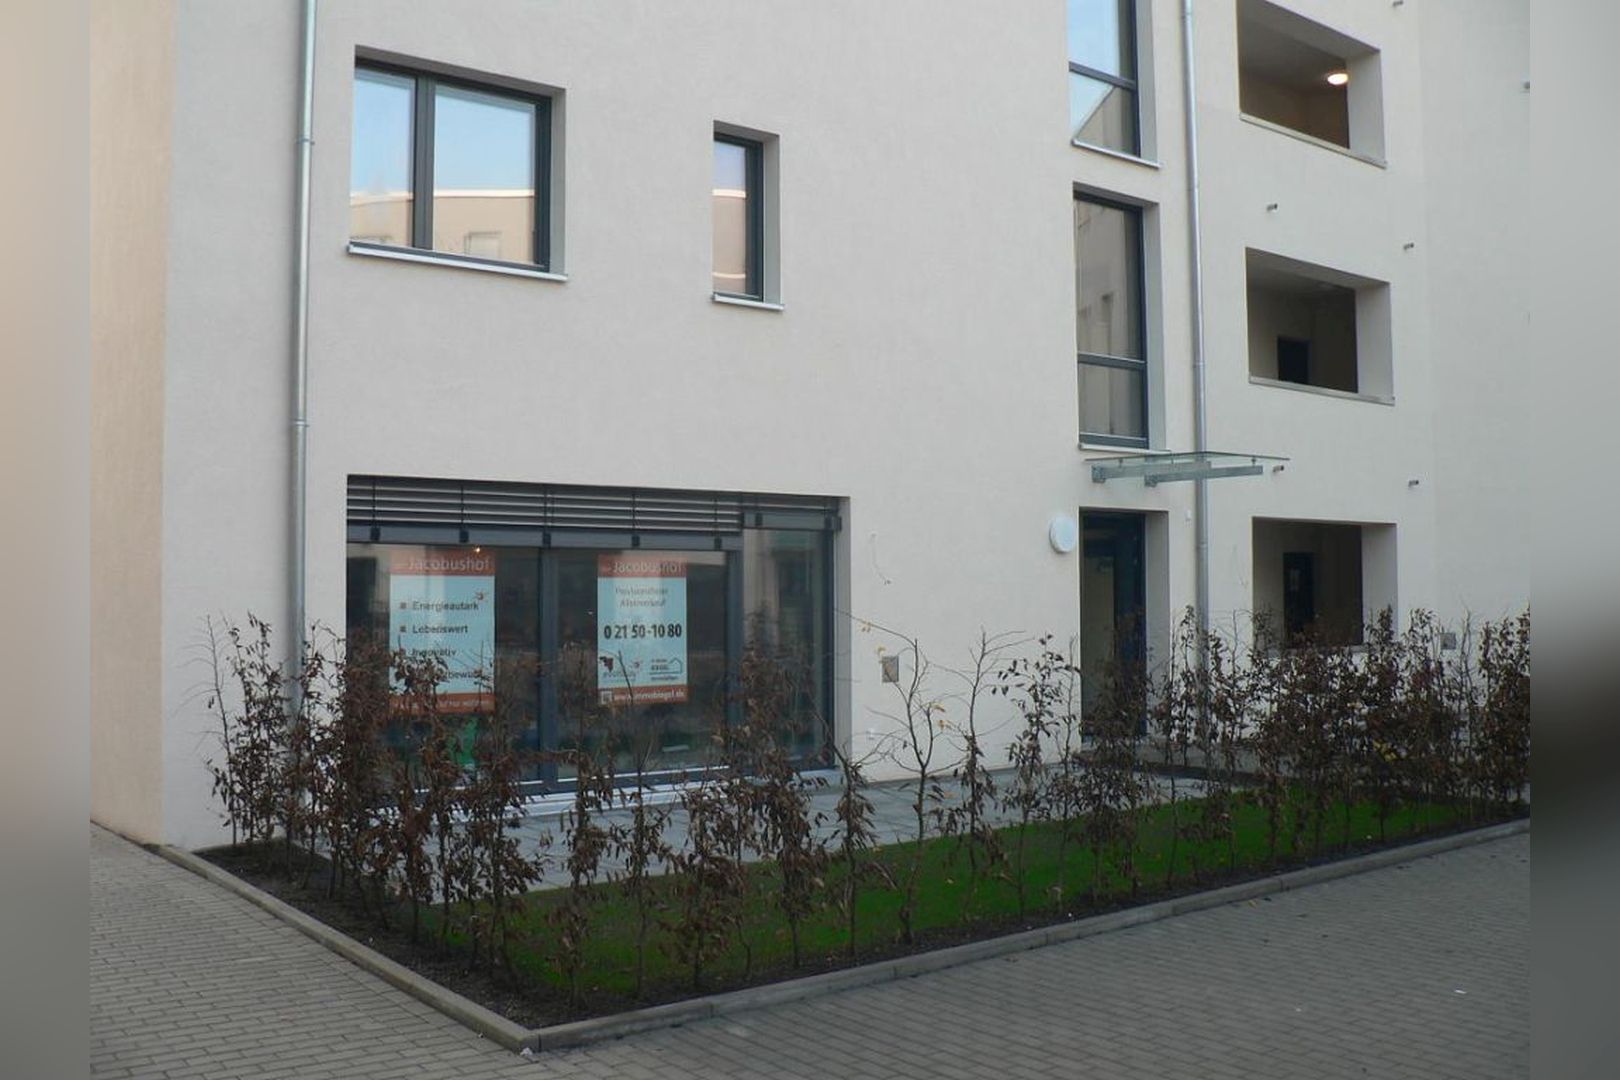 Immobilie Nr.Hilden 034 - 2-Raum-Wohnung mit - Garten - Energie vom Dach - Zentrum vor der Türe und und und... - Bild 2.jpg